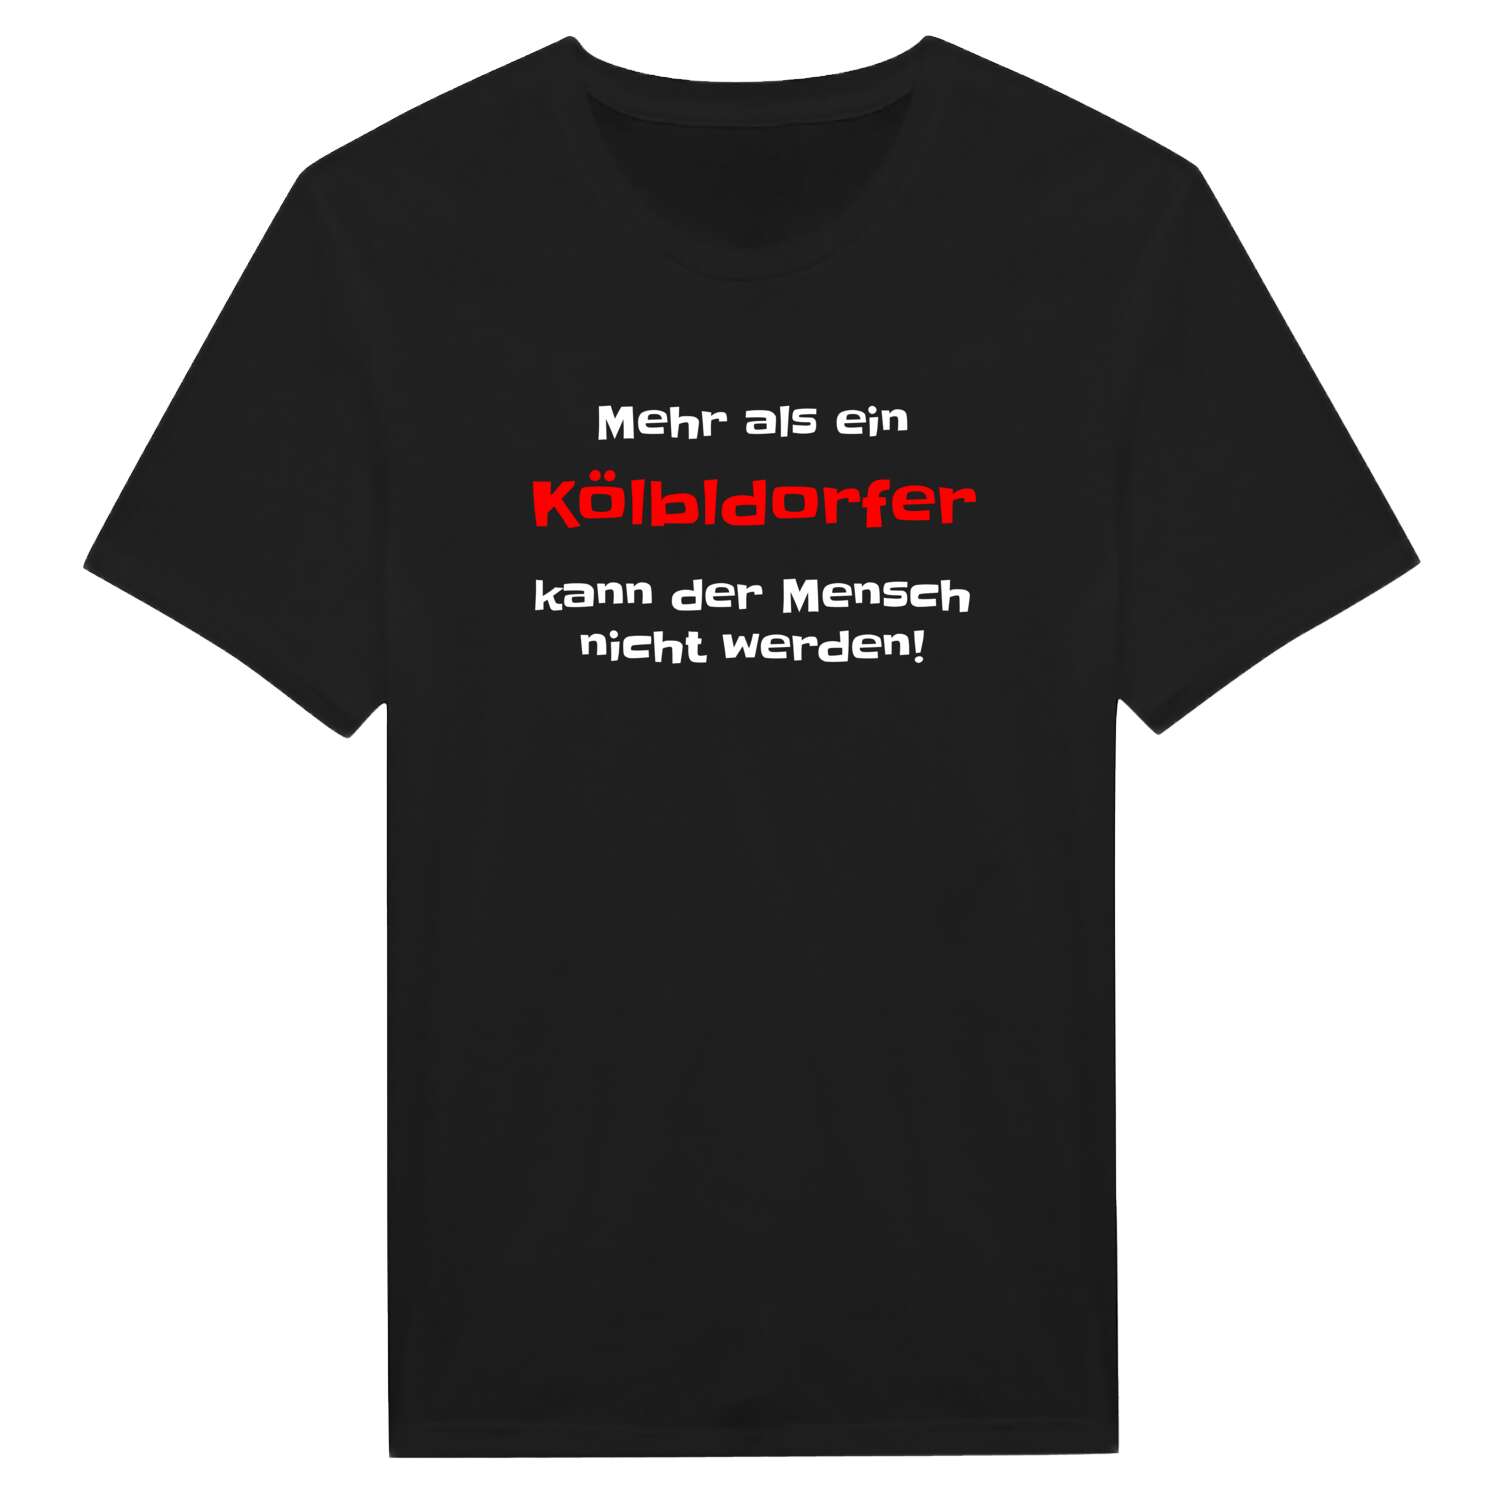 Kölbldorf T-Shirt »Mehr als ein«